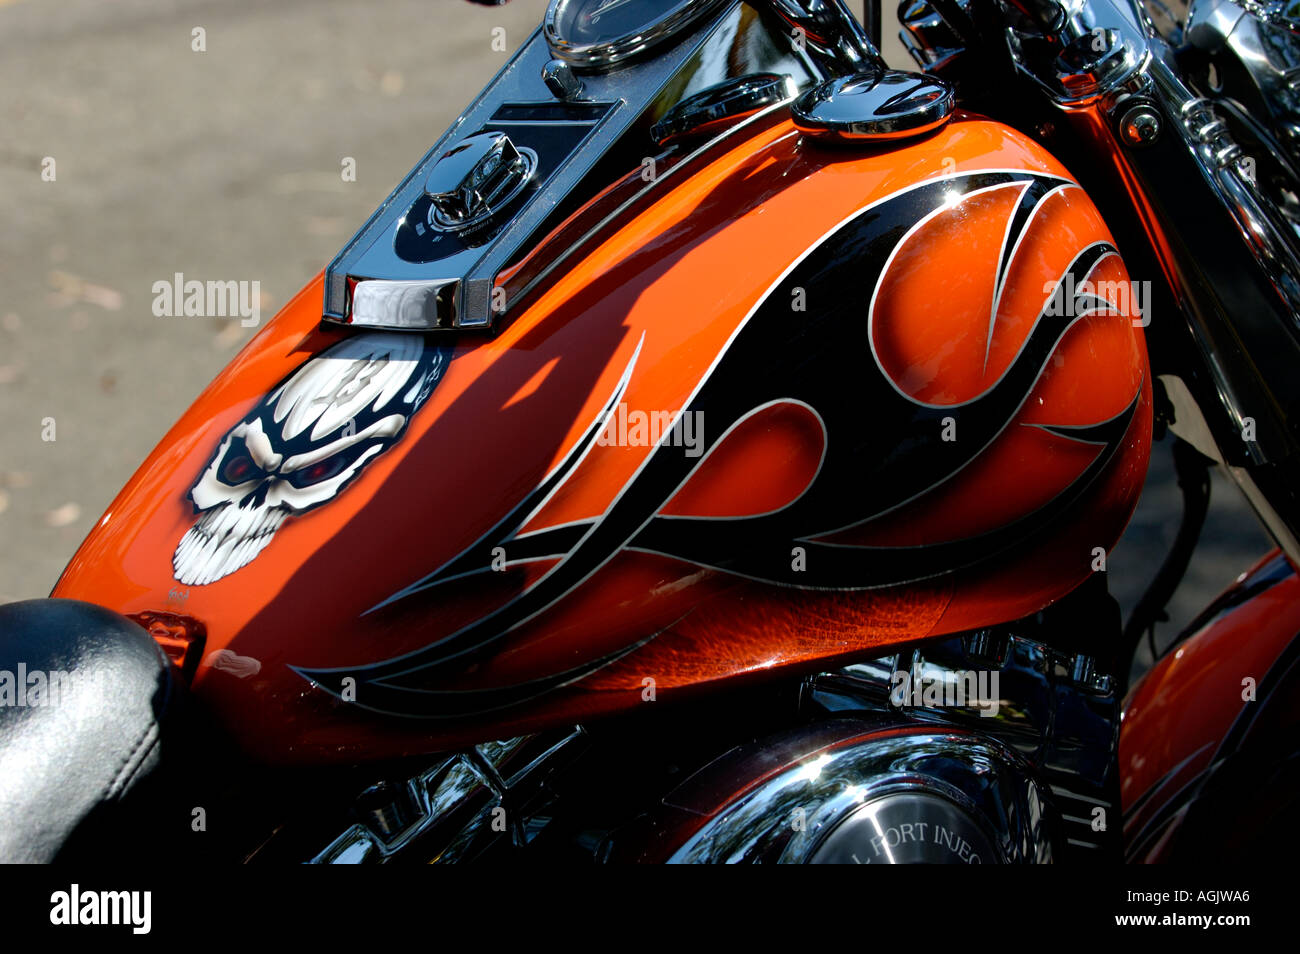 Réservoir de carburant de moto Harley Davidson peinture personnalisée Photo  Stock - Alamy